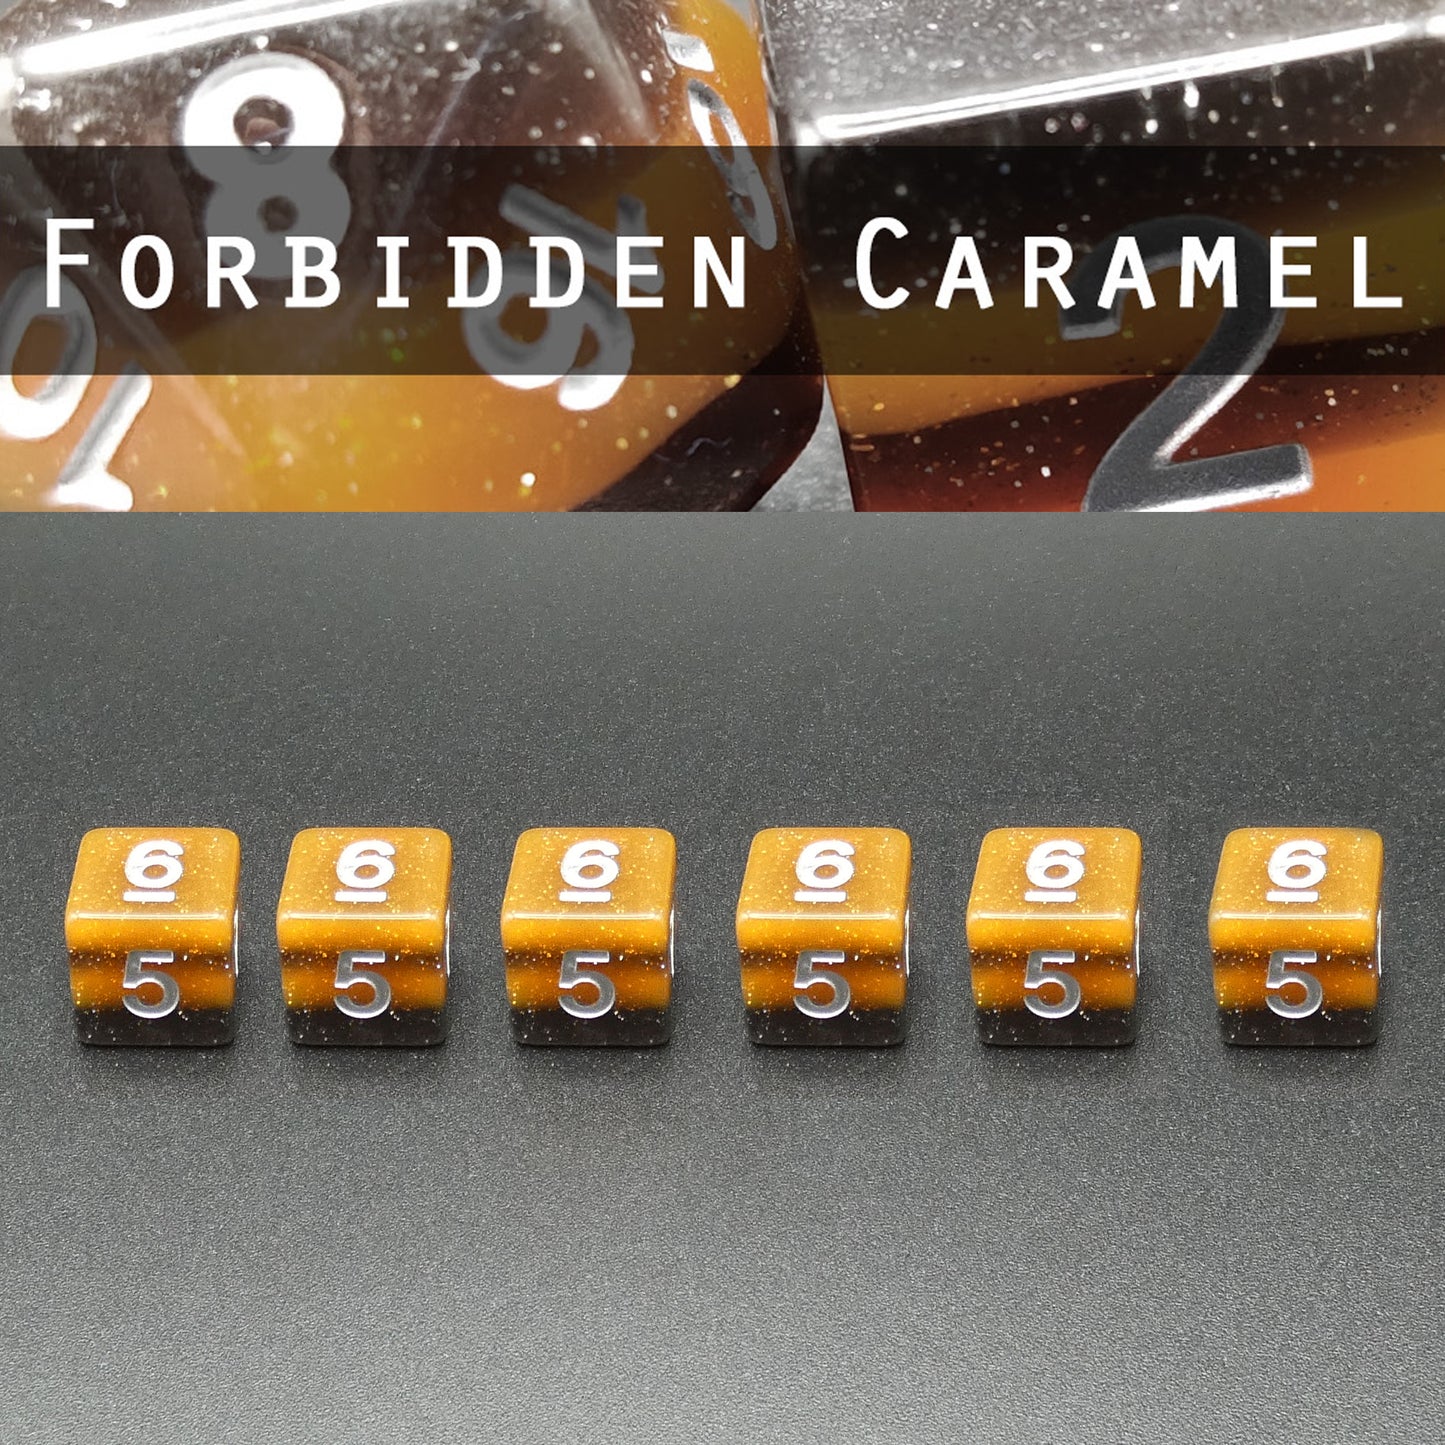 Forbidden Caramel - Set of 6D6's